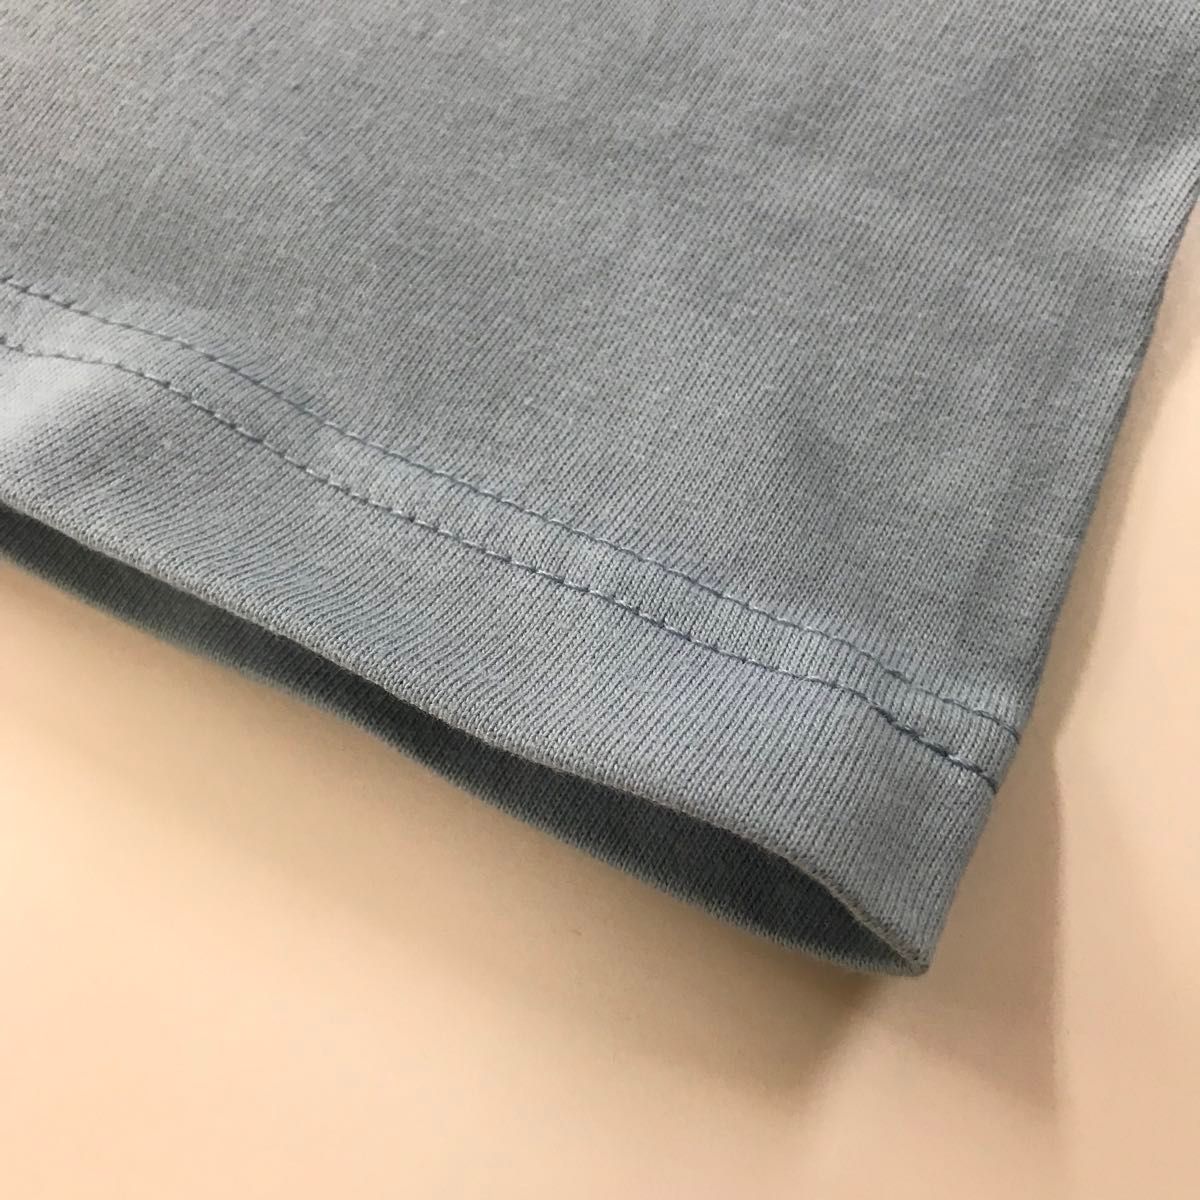 Tシャツ 半袖 5.6オンス ハイクオリティー【5001-01】XL アシッドブルー 綿100%